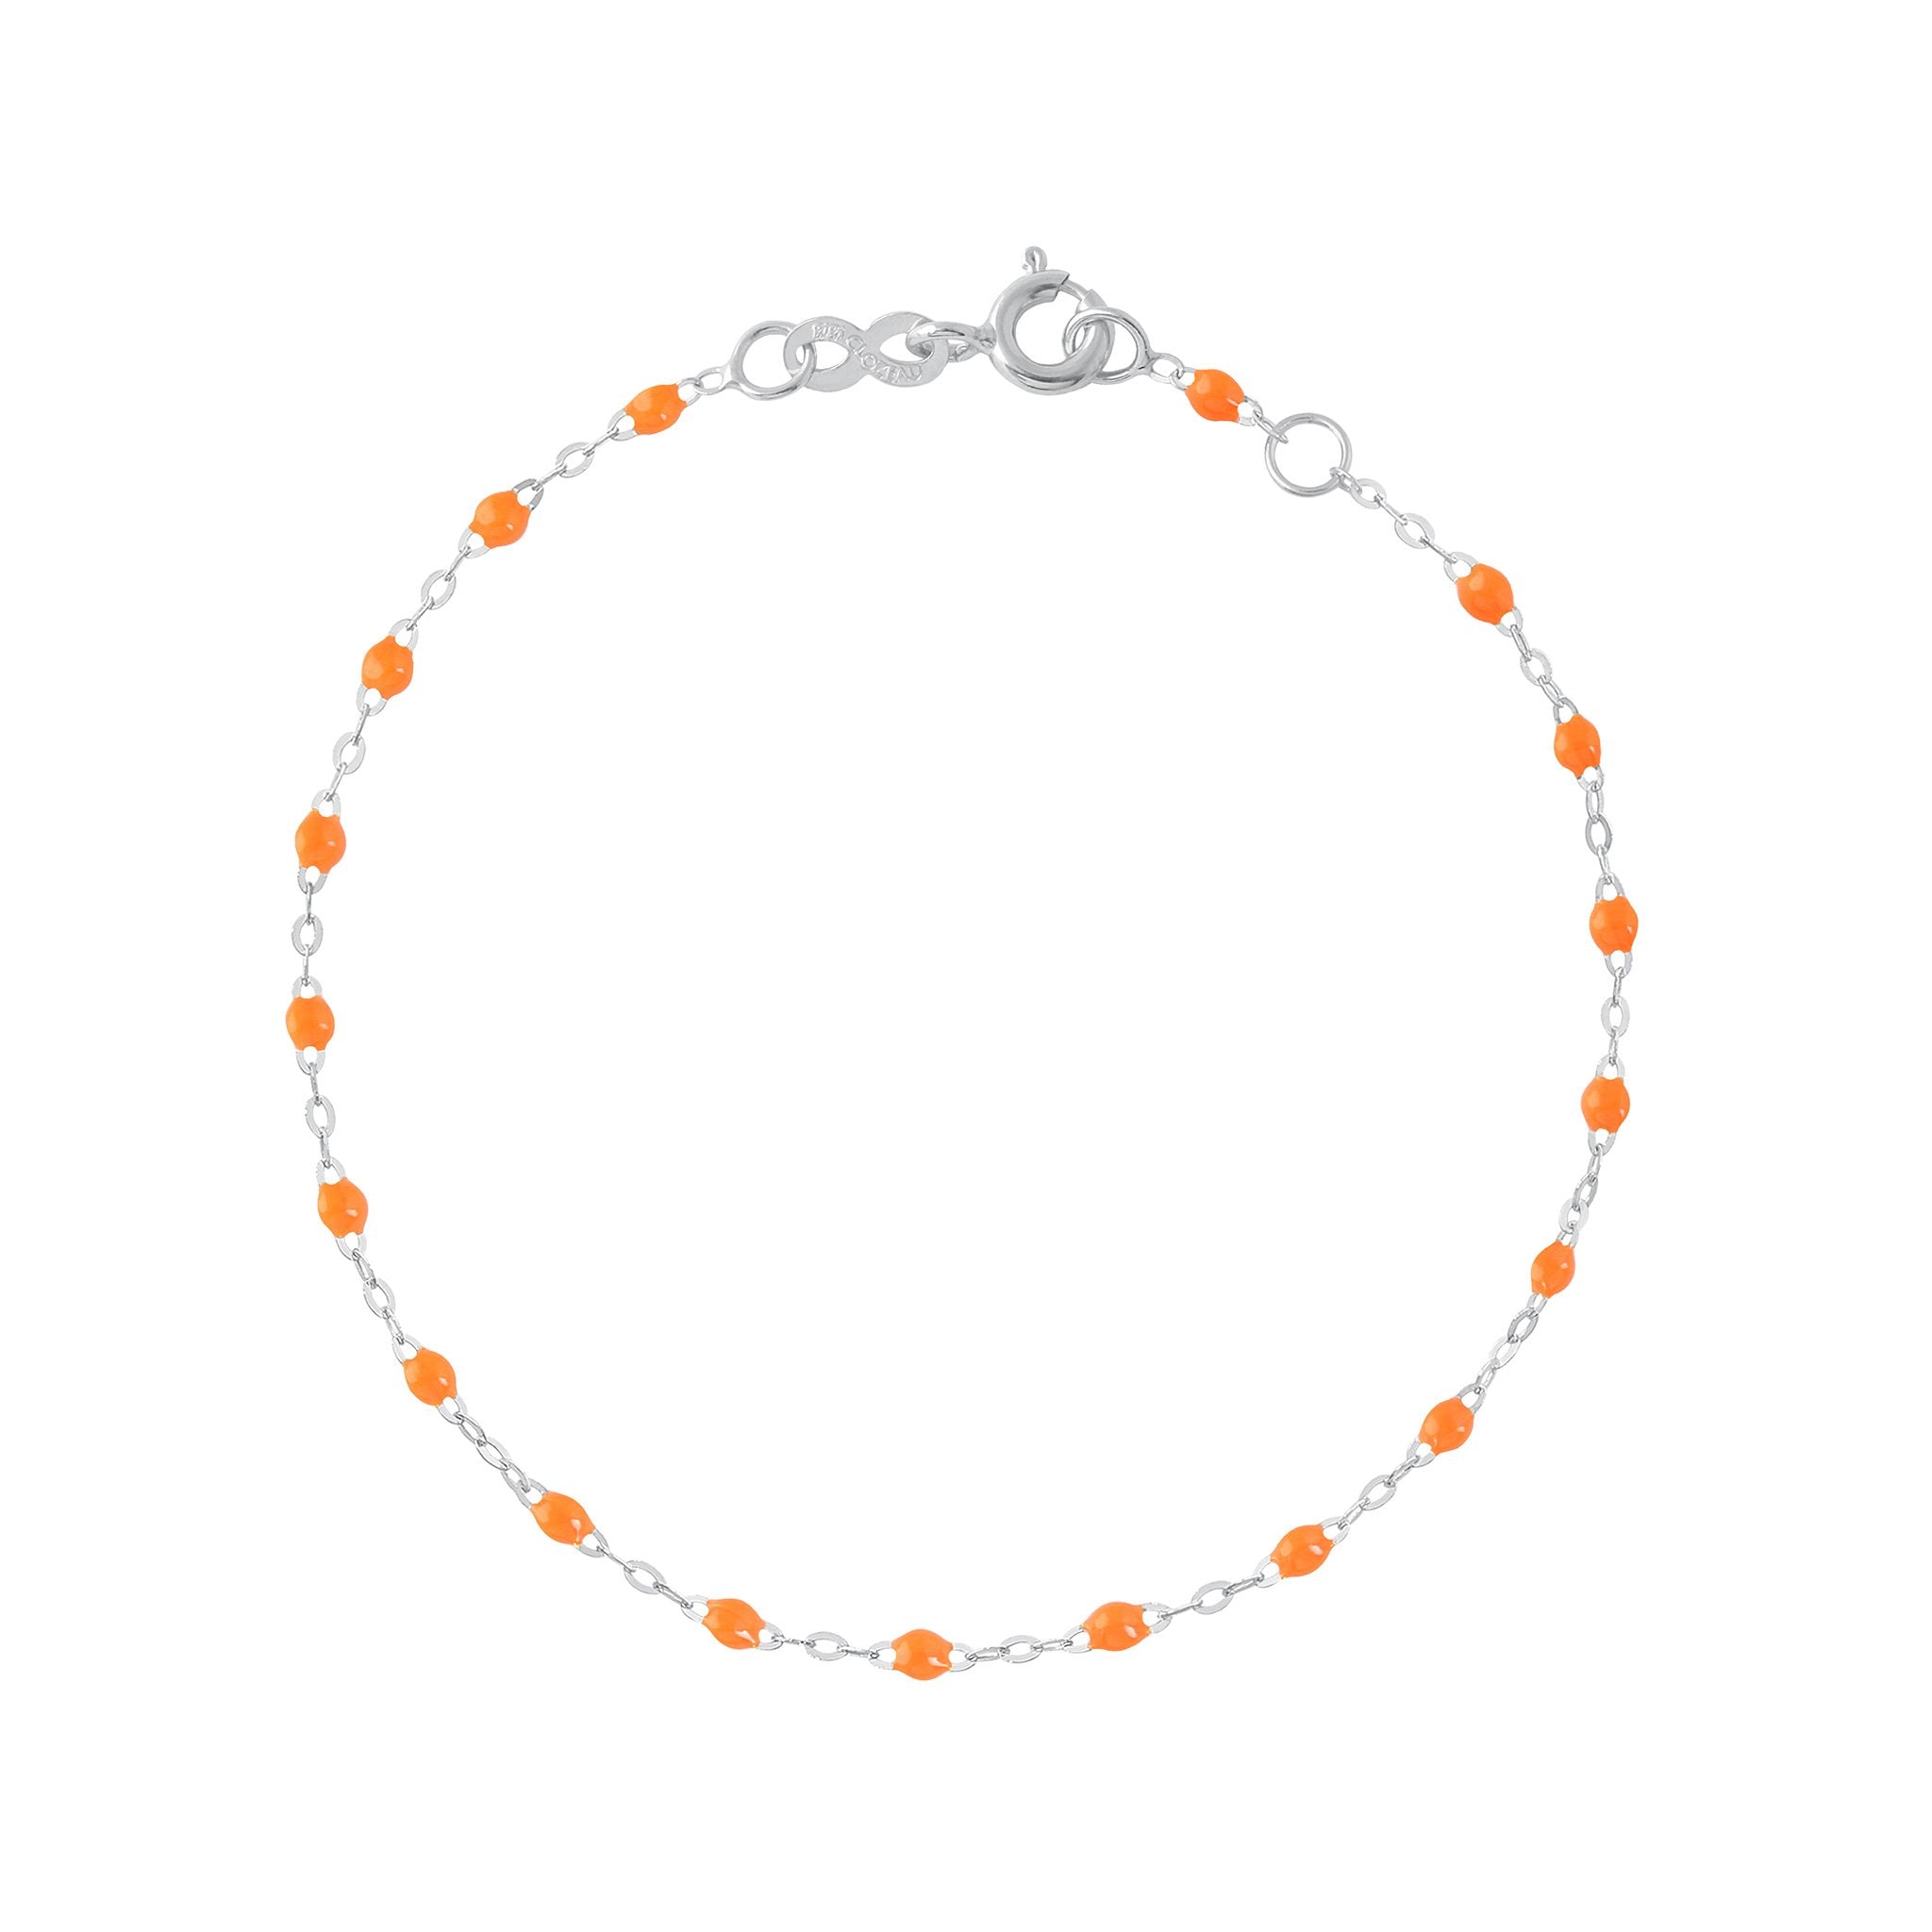 Bracelet orange fluo Classique Gigi, or blanc, 15 cm classique gigi Référence :  b3gi001g1315xx -1